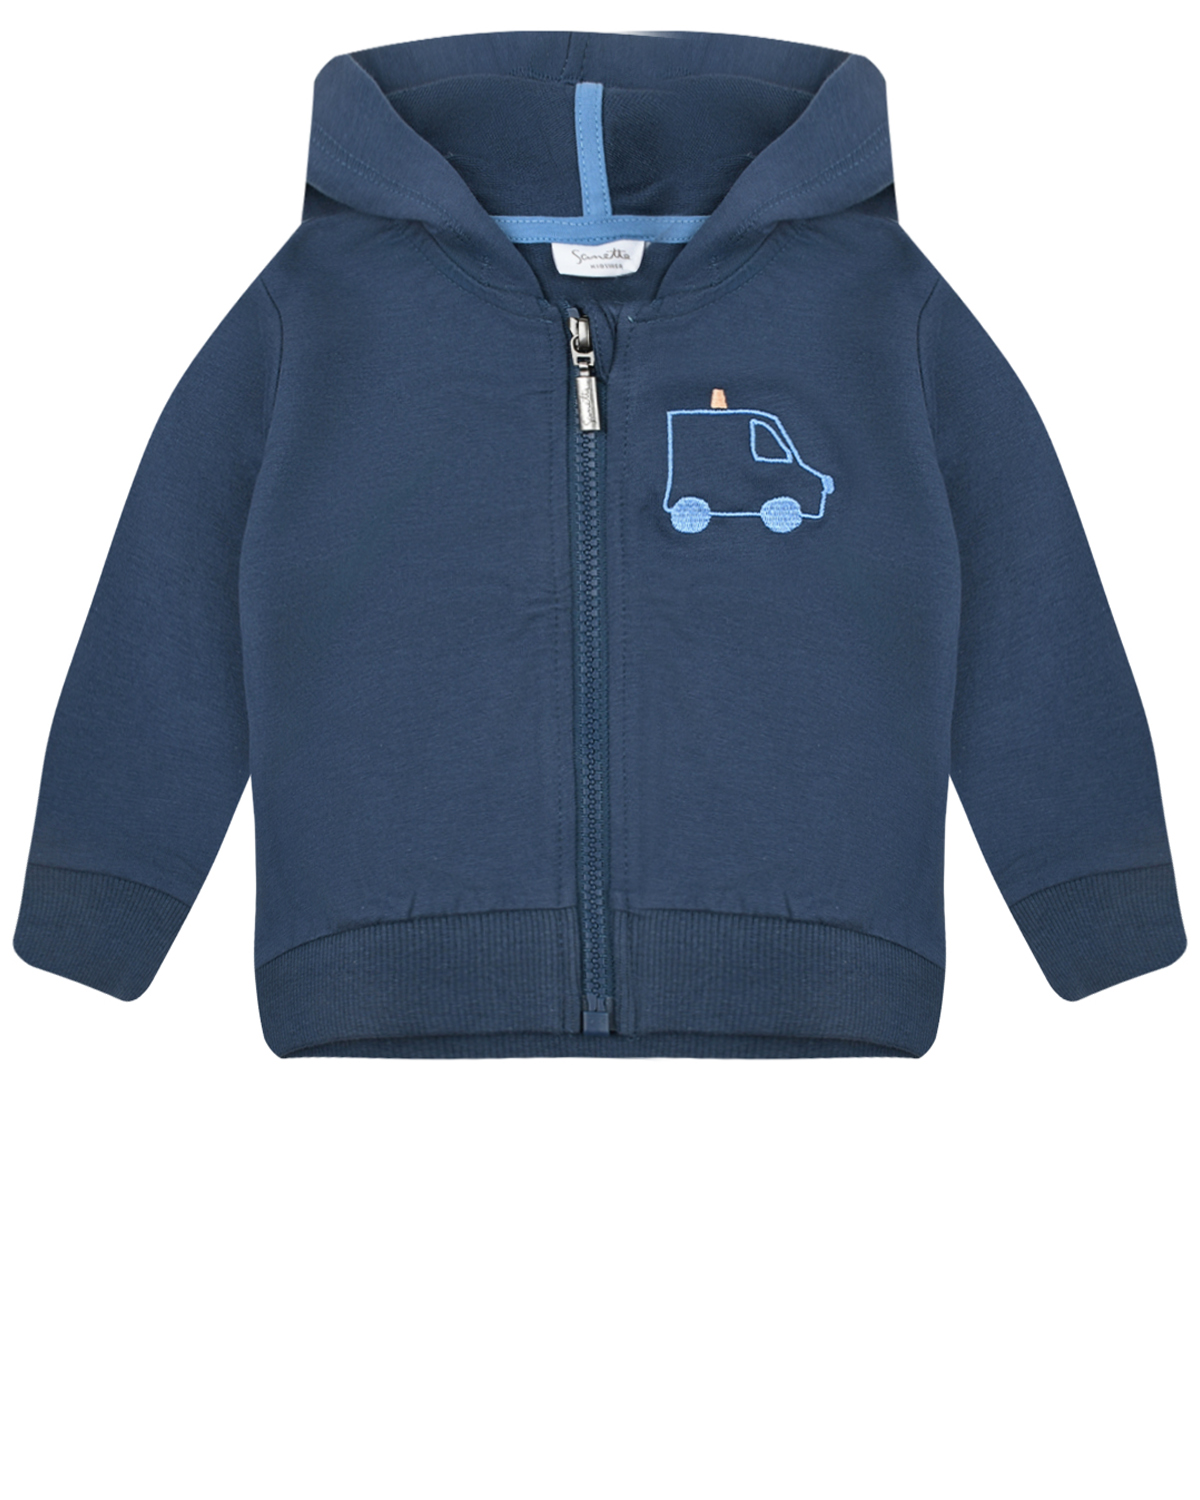 Темно-синяя спортивная куртка с вышивкой Sanetta Kidswear комбинезон с вышивкой автобус sanetta